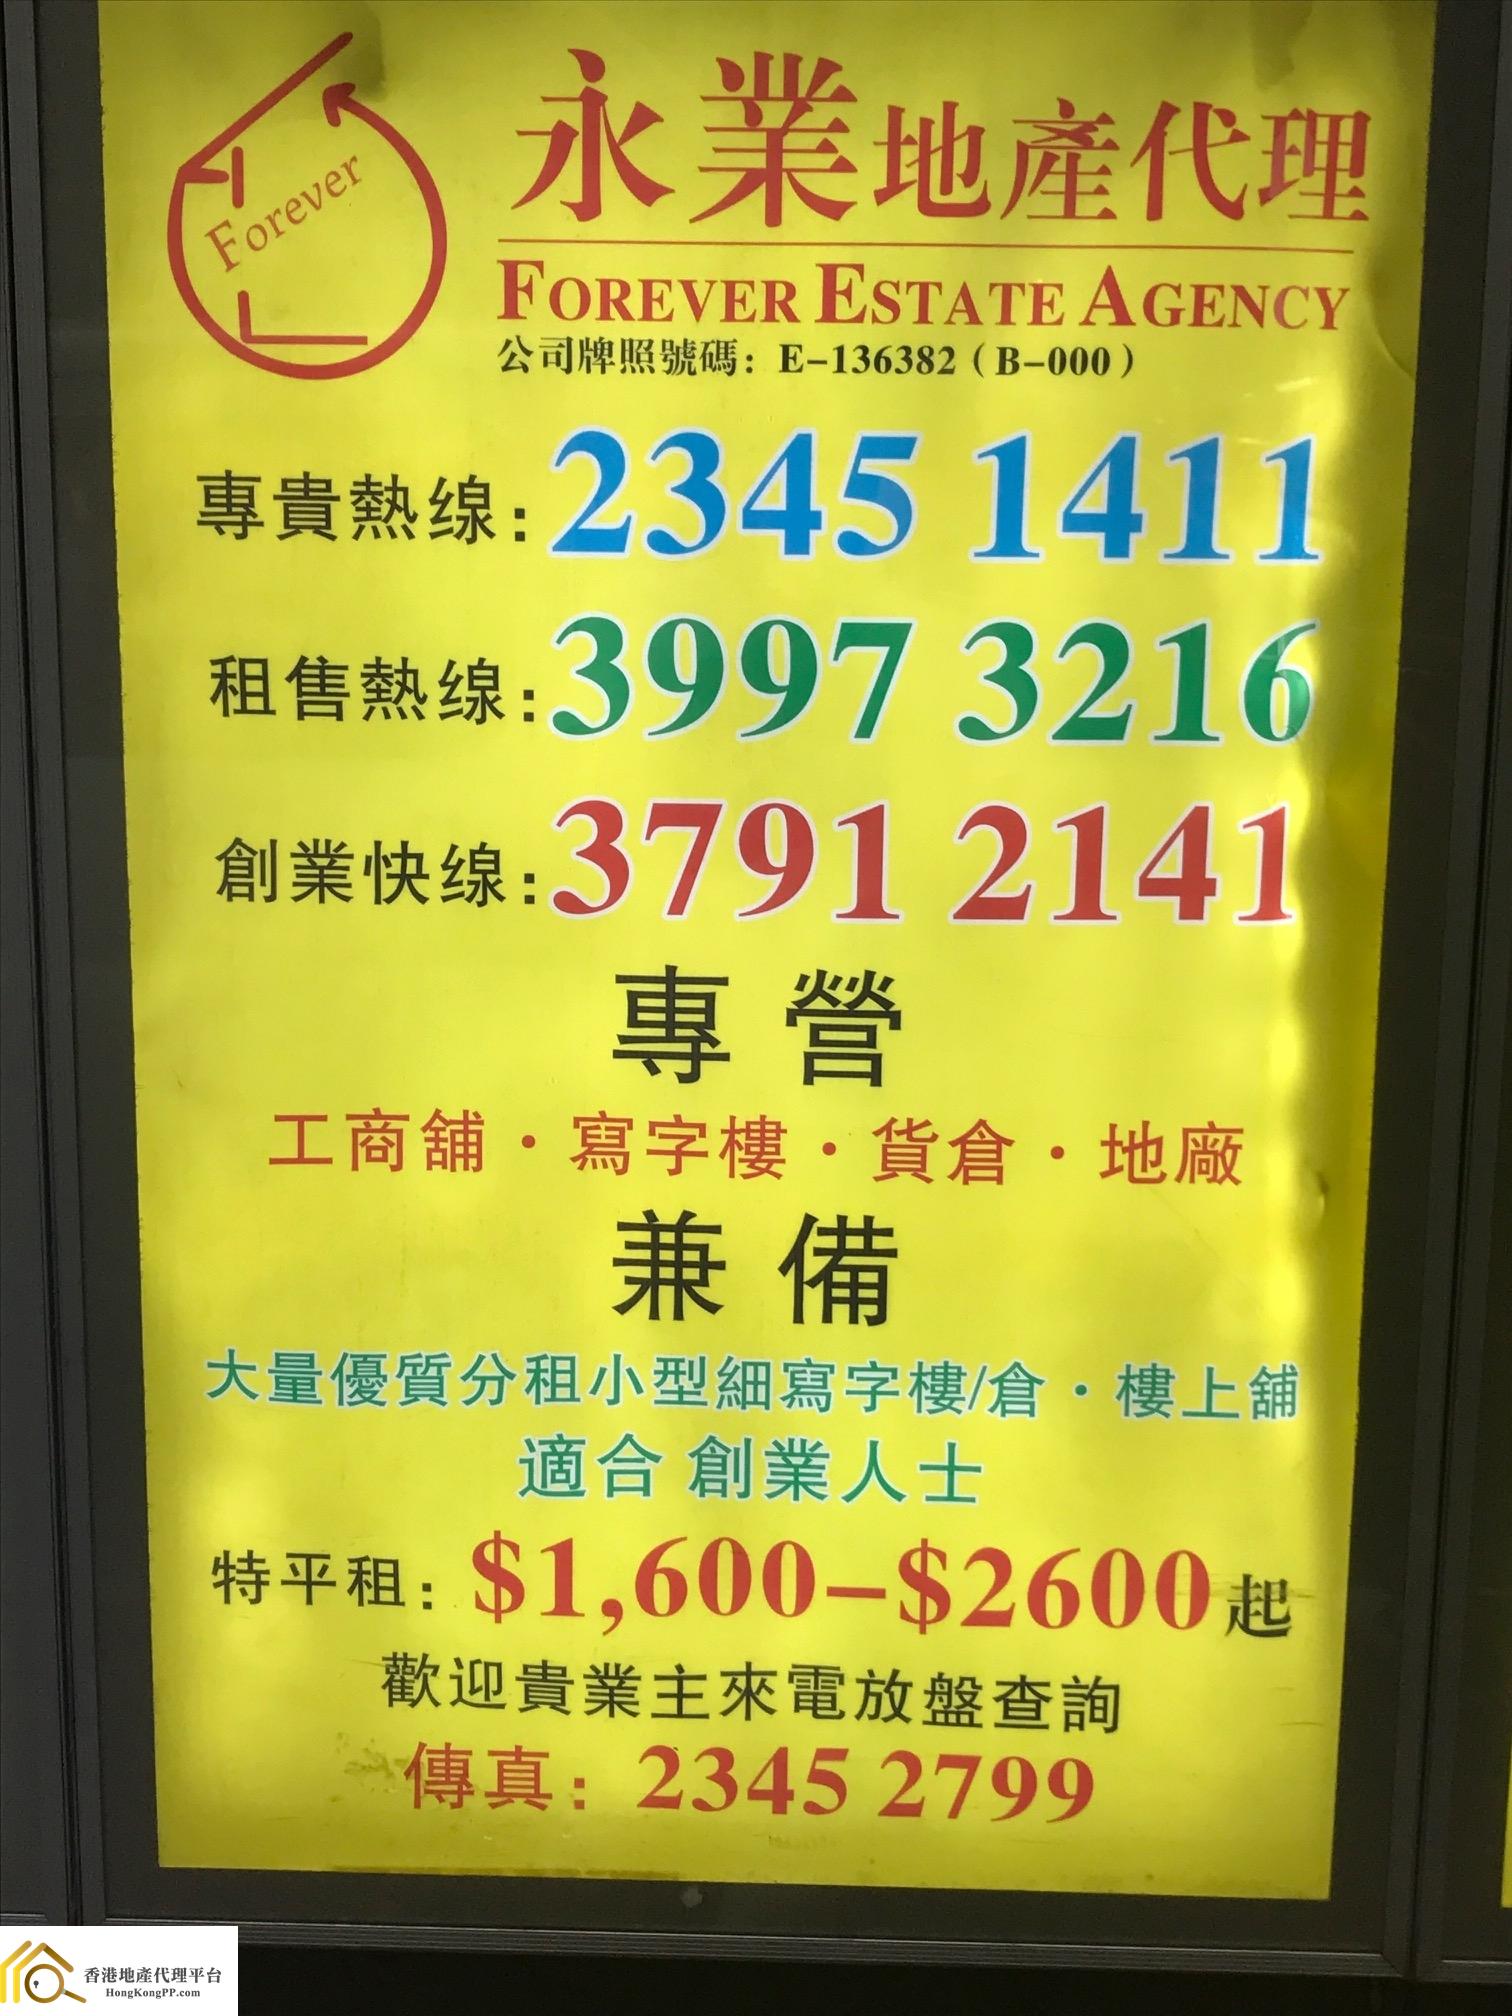 ShopEstate Agent: 永業地產代理 Forever Estate Agency 